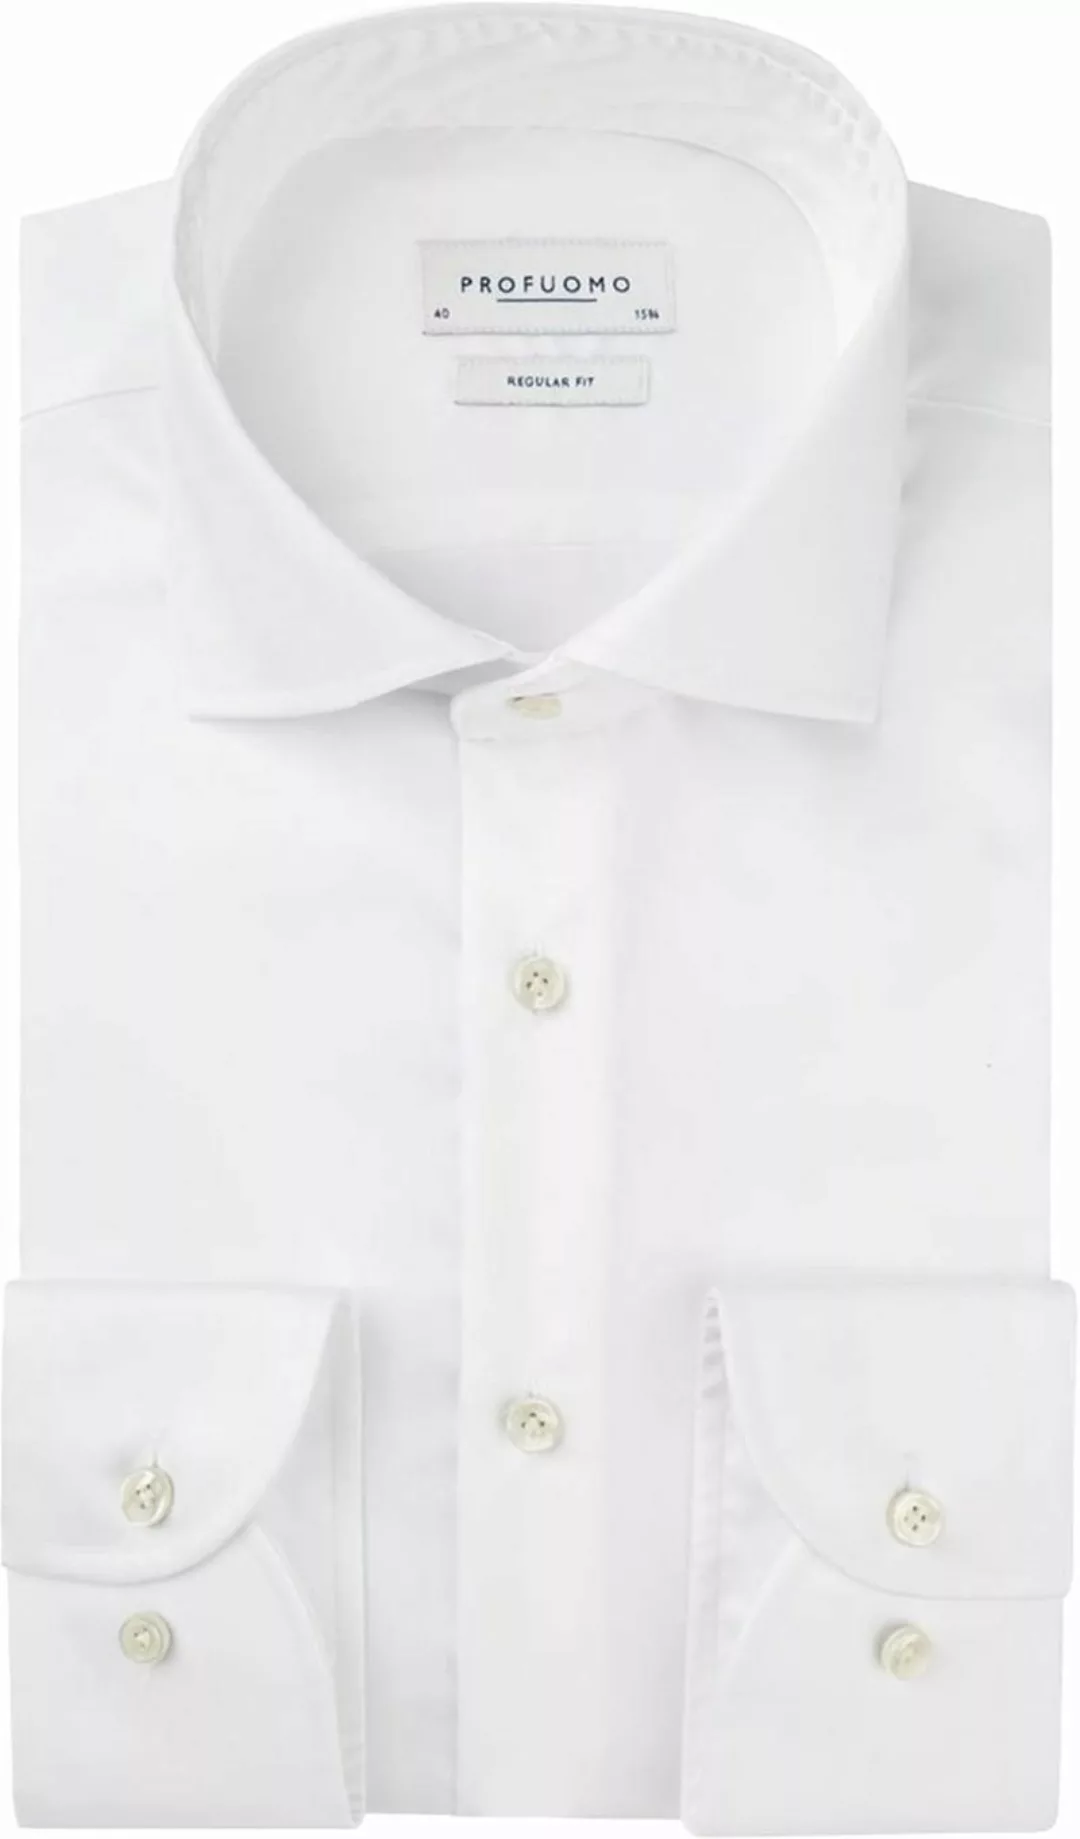 Profuomo Originale Hemd RF Weiß - Größe 44 günstig online kaufen